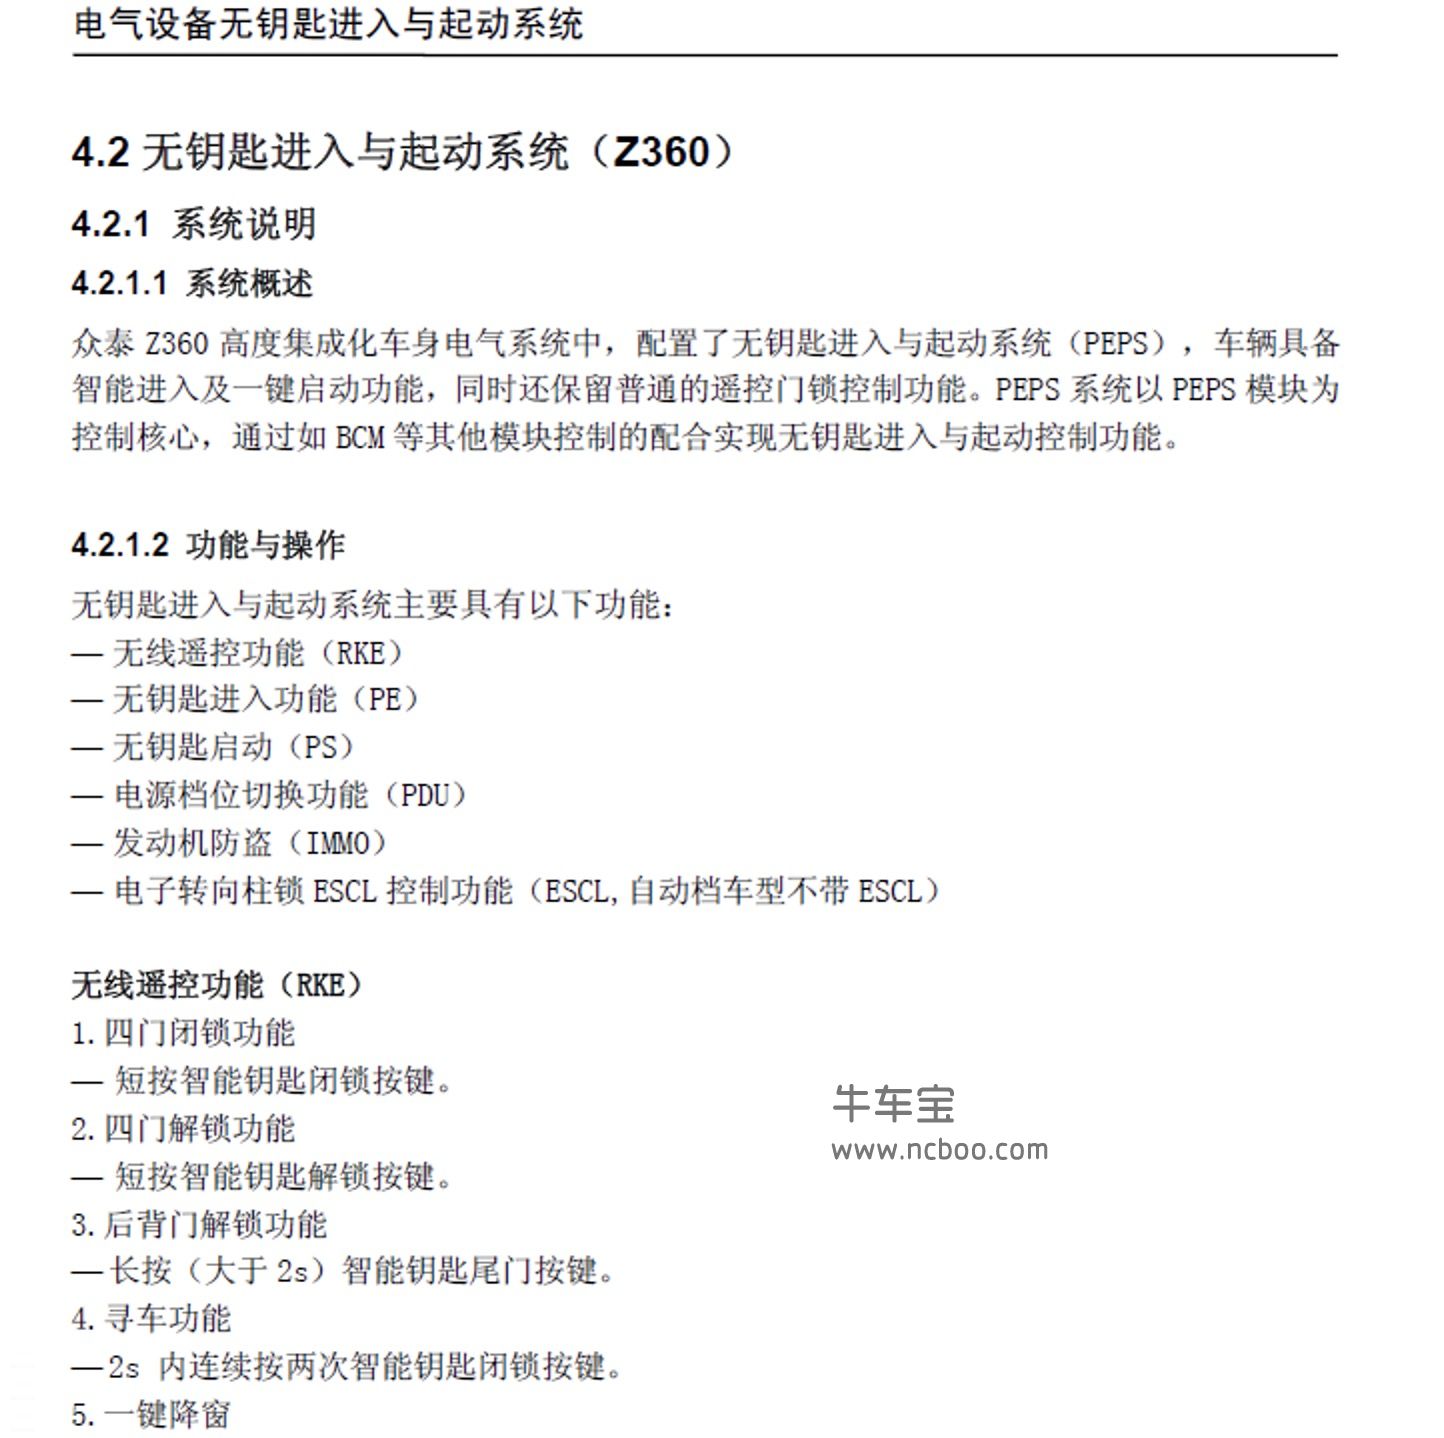 2017-2018款众泰Z300原厂维修手册和电路图资料下载